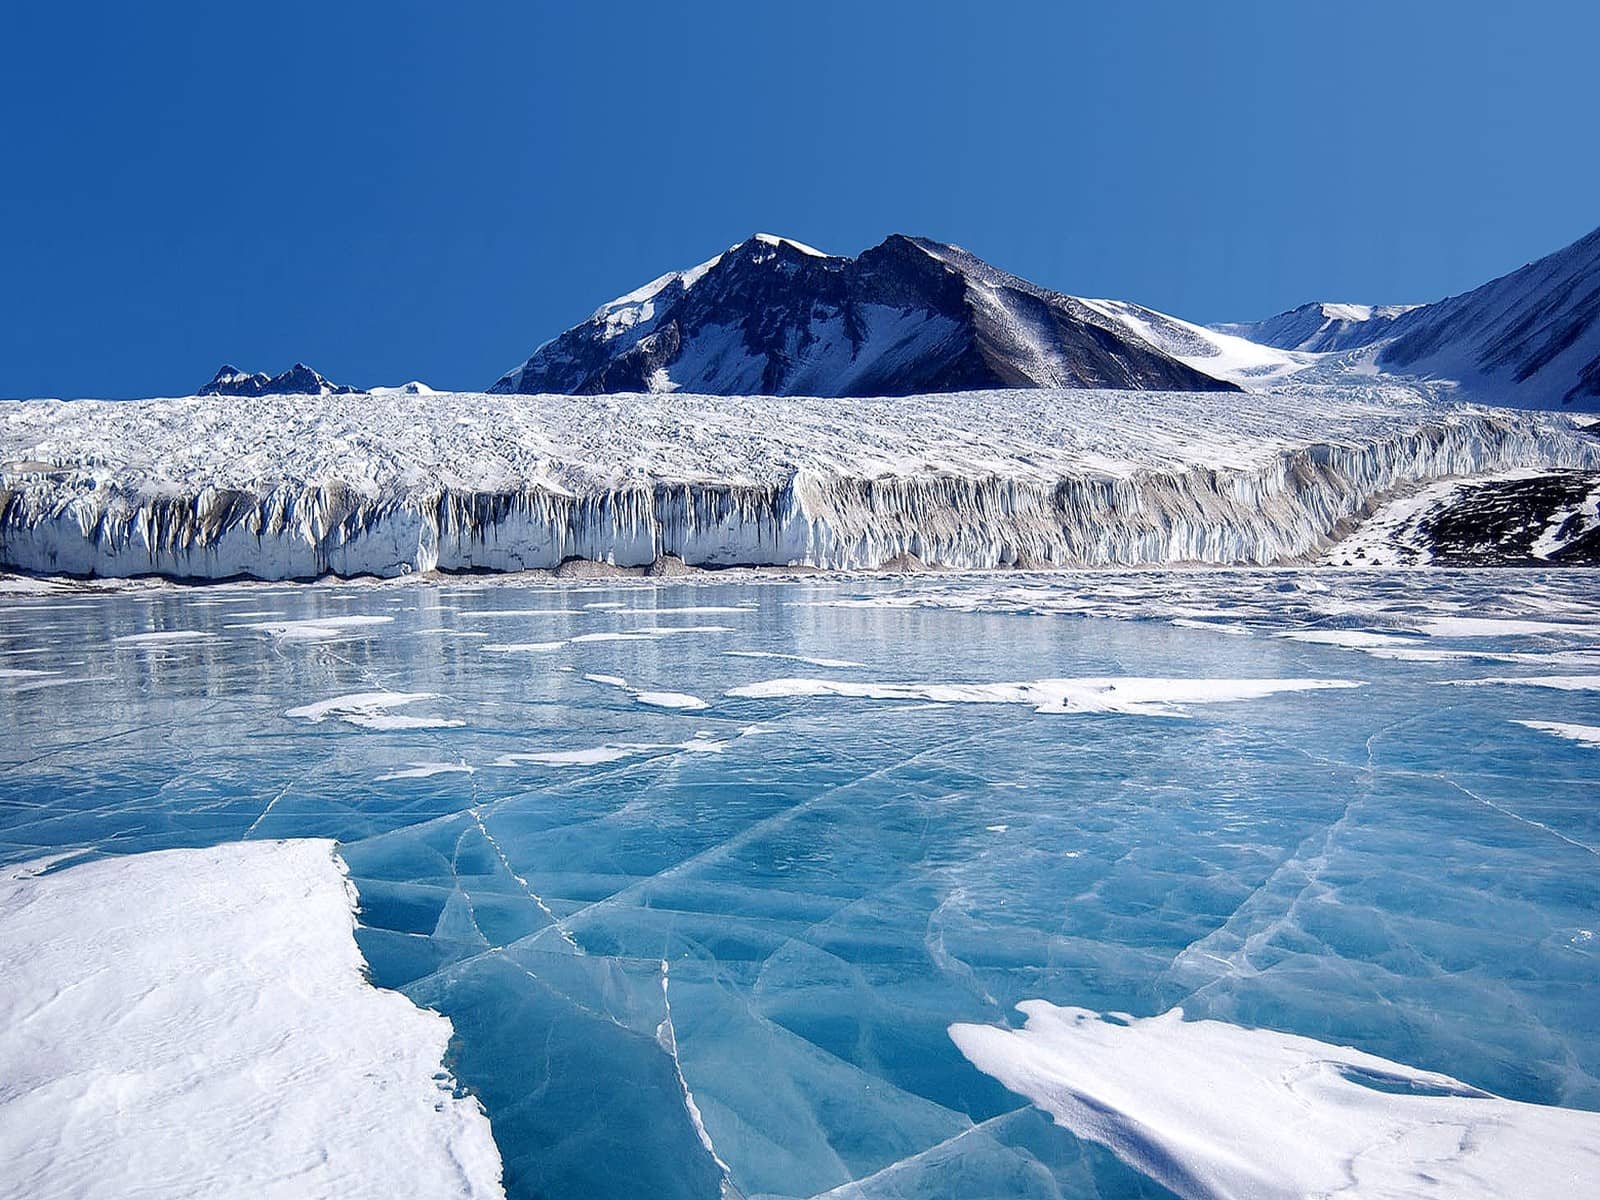 ladakh wallpaper hd,ghiaccio,lago glaciale,ghiacciaio,oceano artico,iceberg